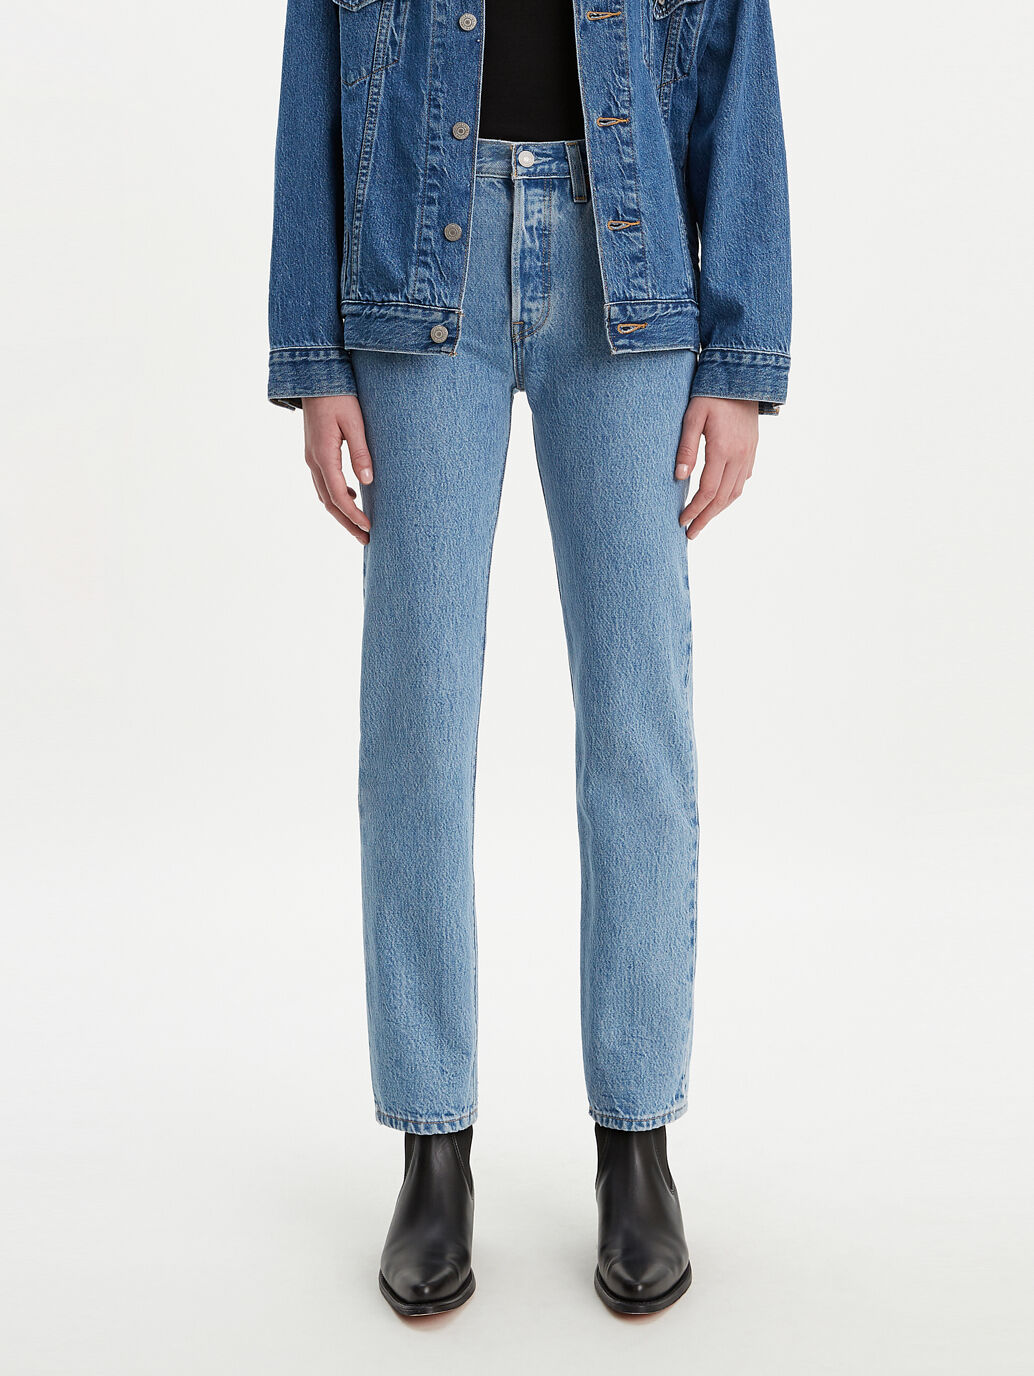 levis jeans 301